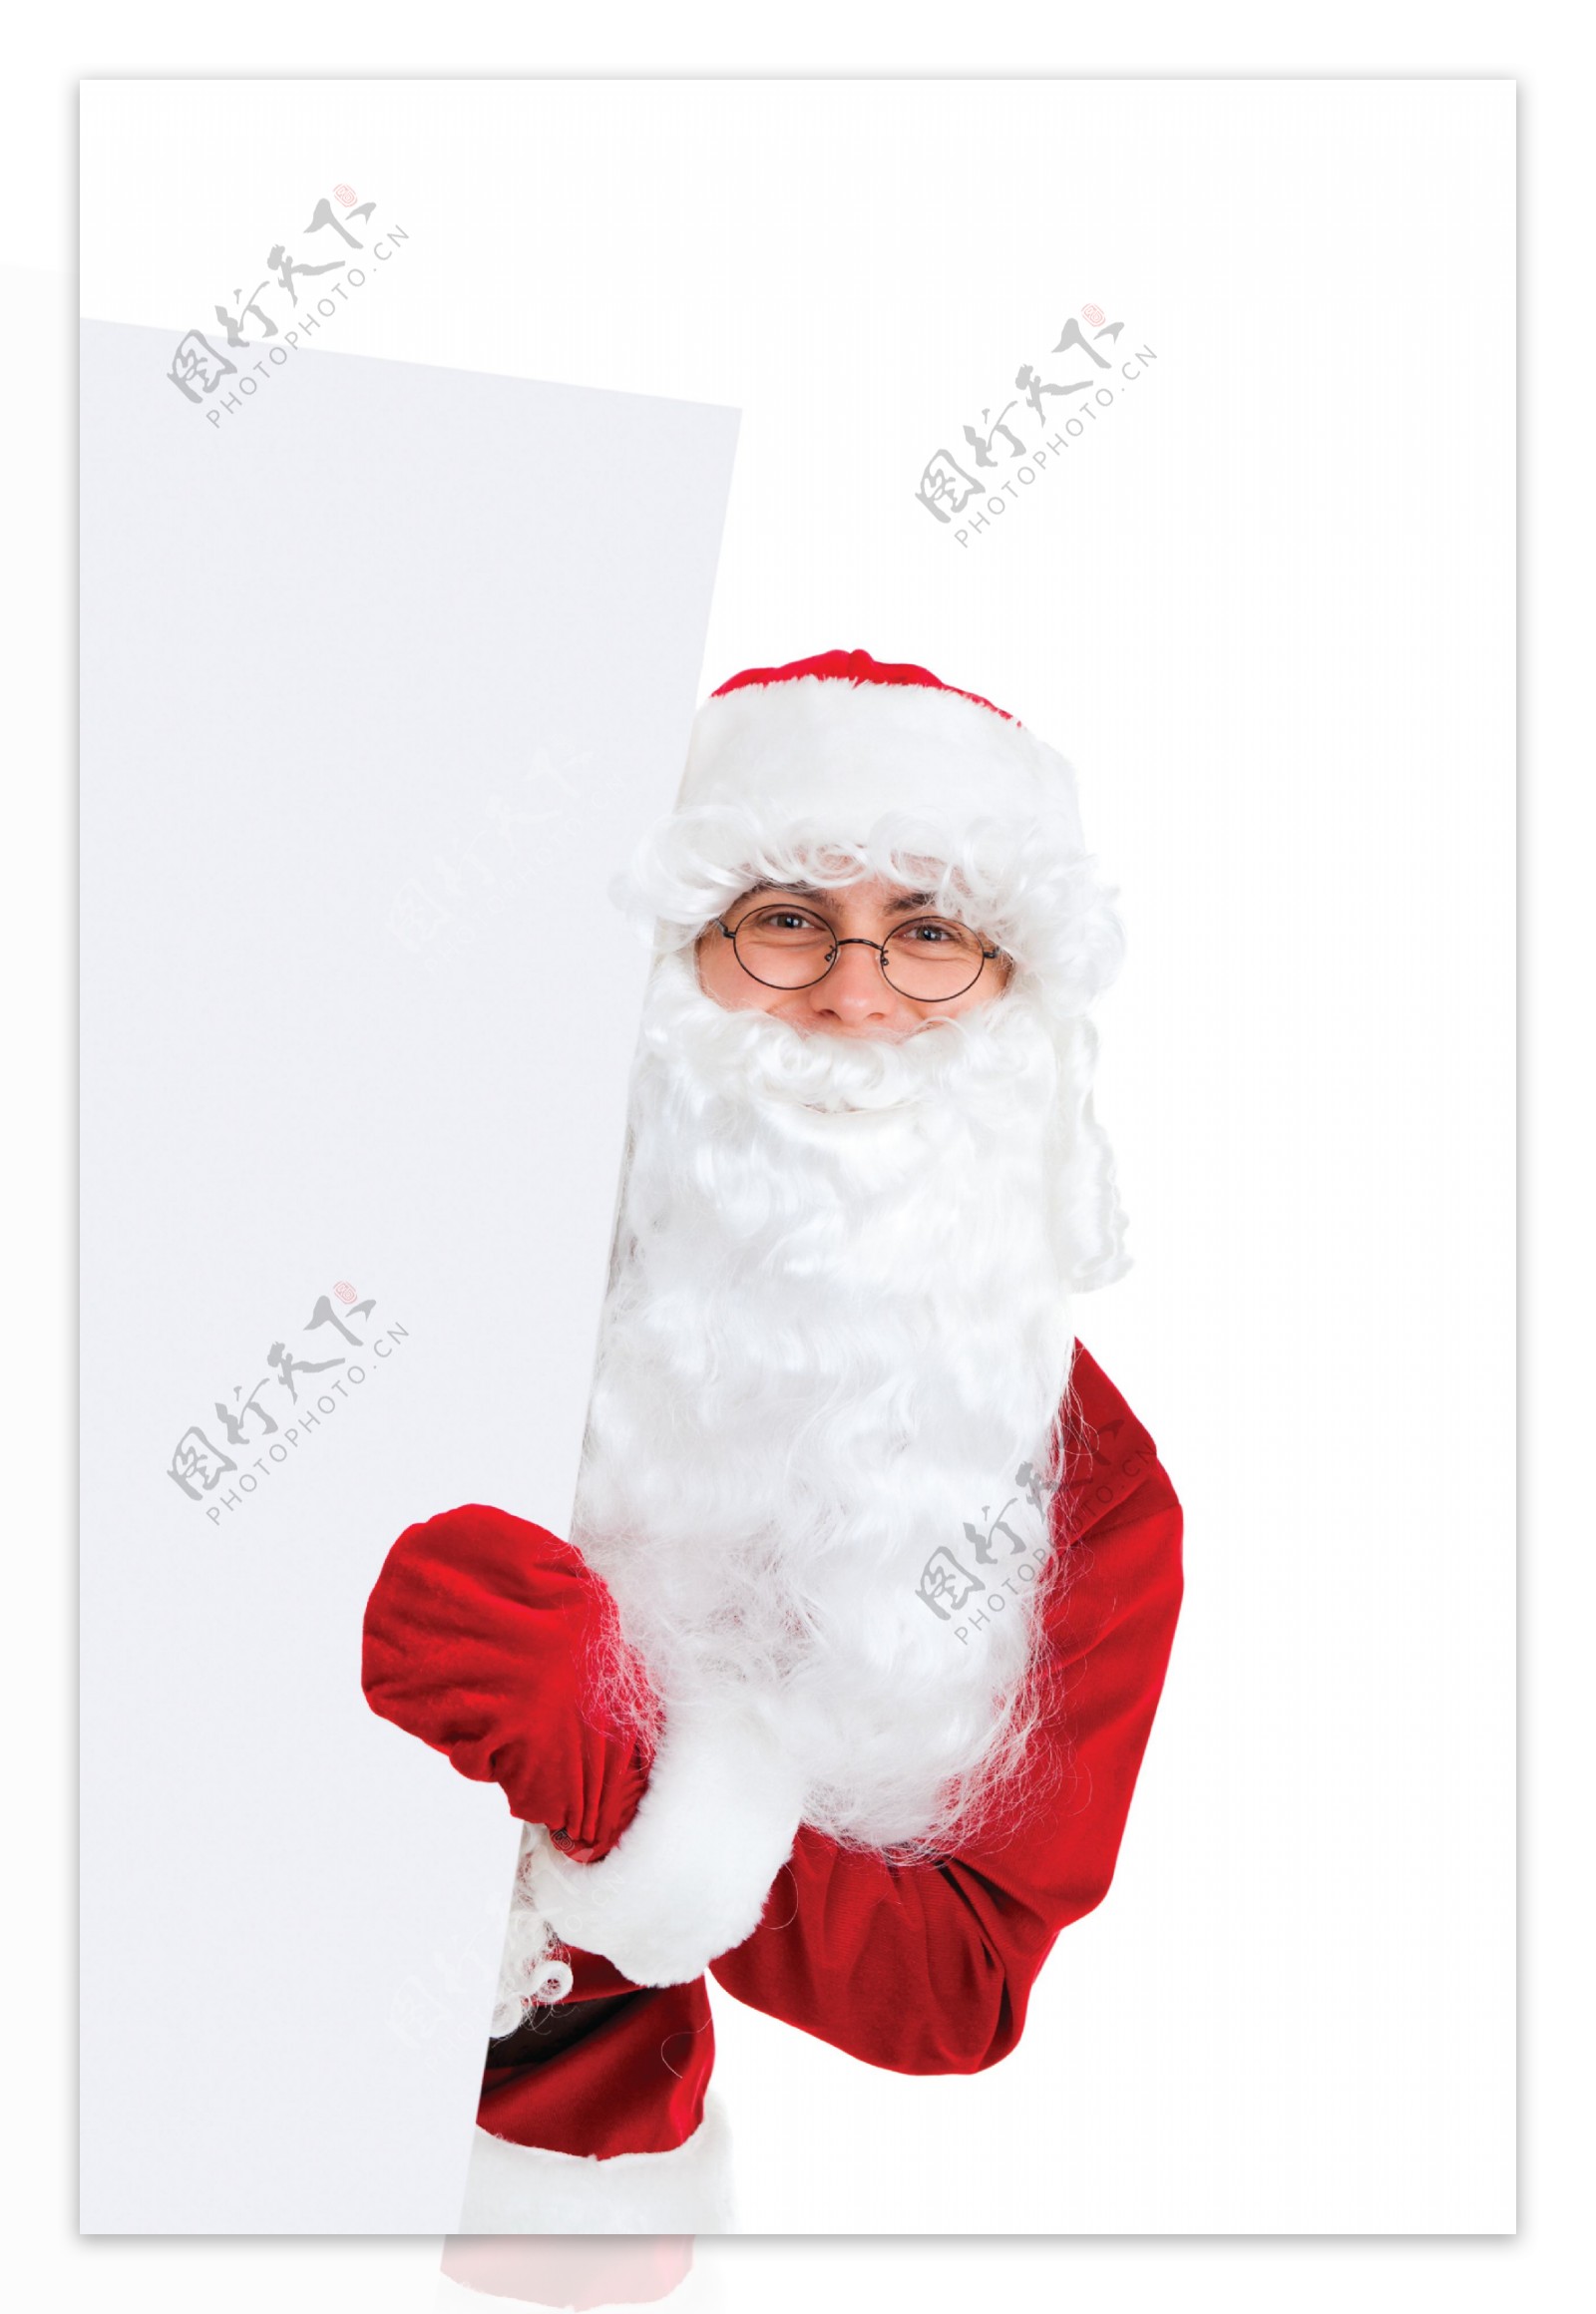 展示广告牌的圣诞老人图片